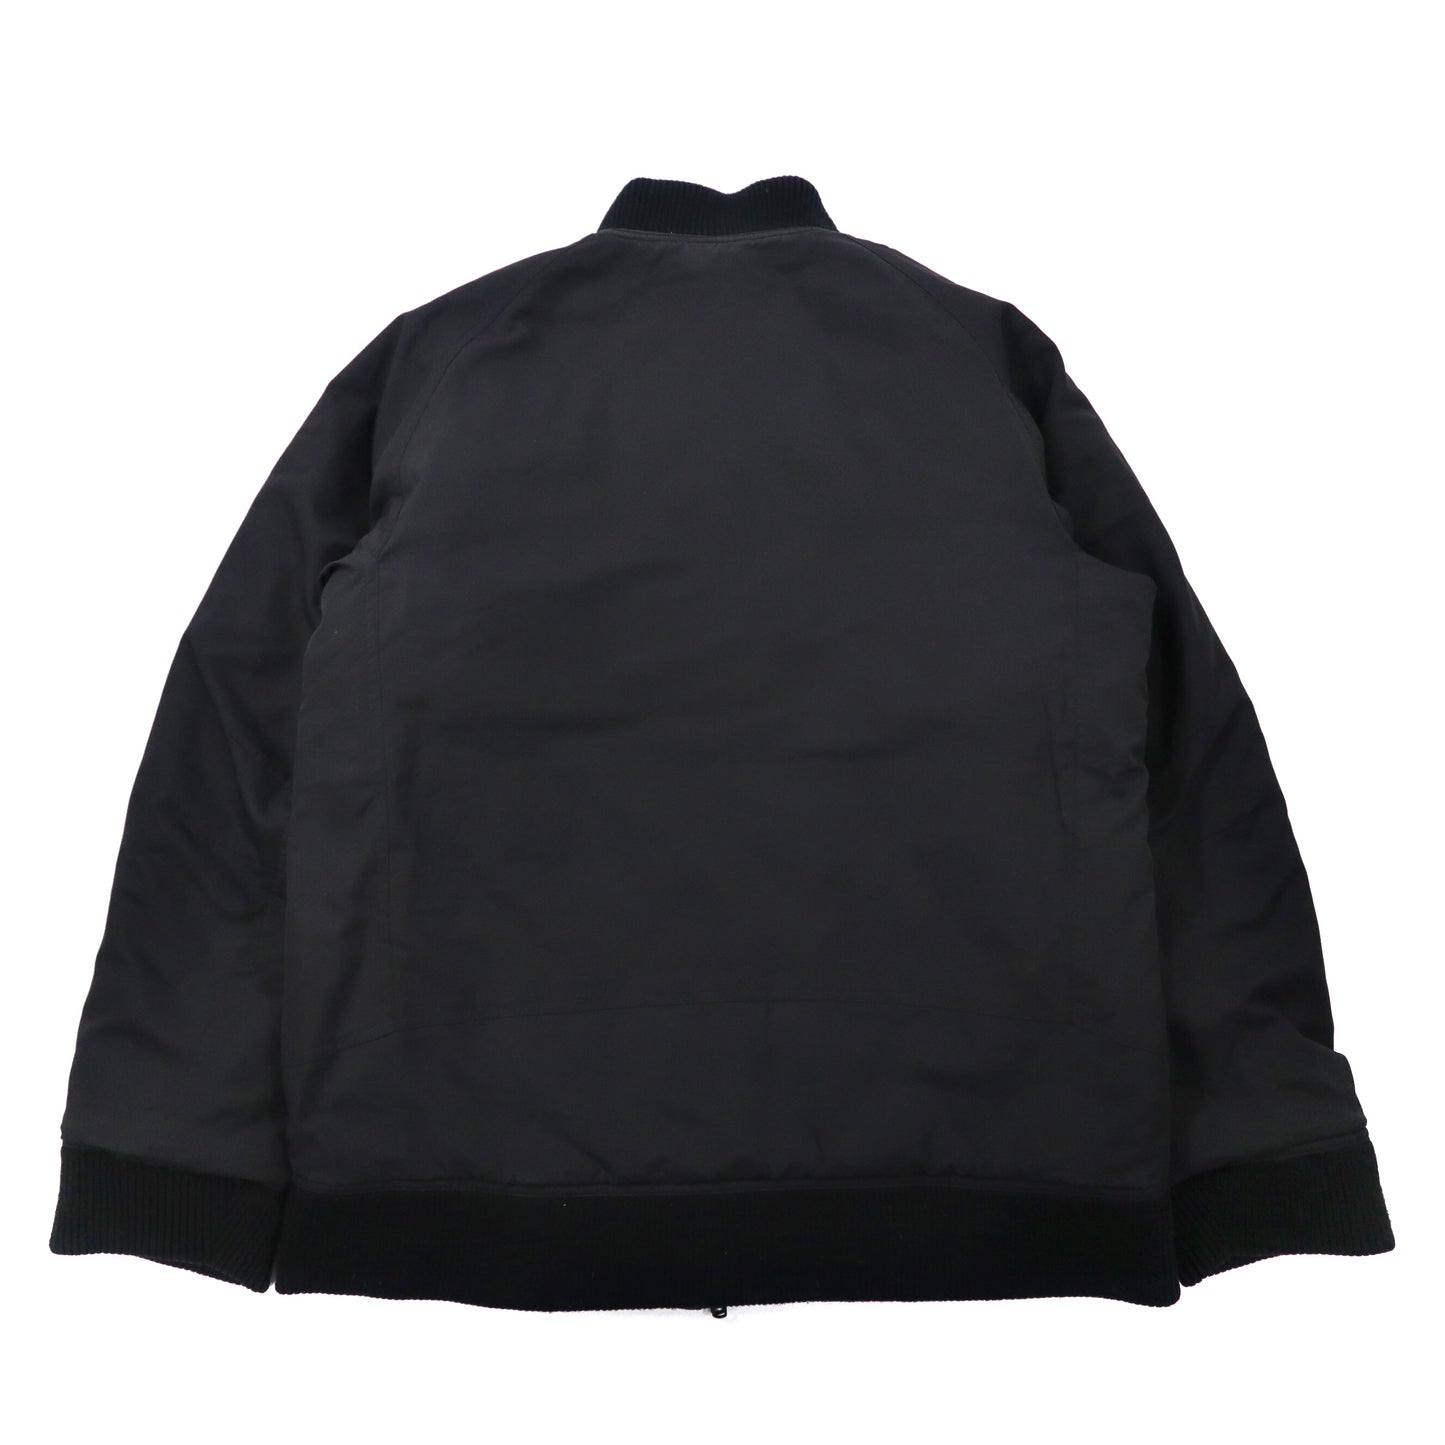 Columbia タリスウッドジャケット インサレーションジャケット リバーシブル M ブラック ポリエステル ロゴ刺繍 PM5044